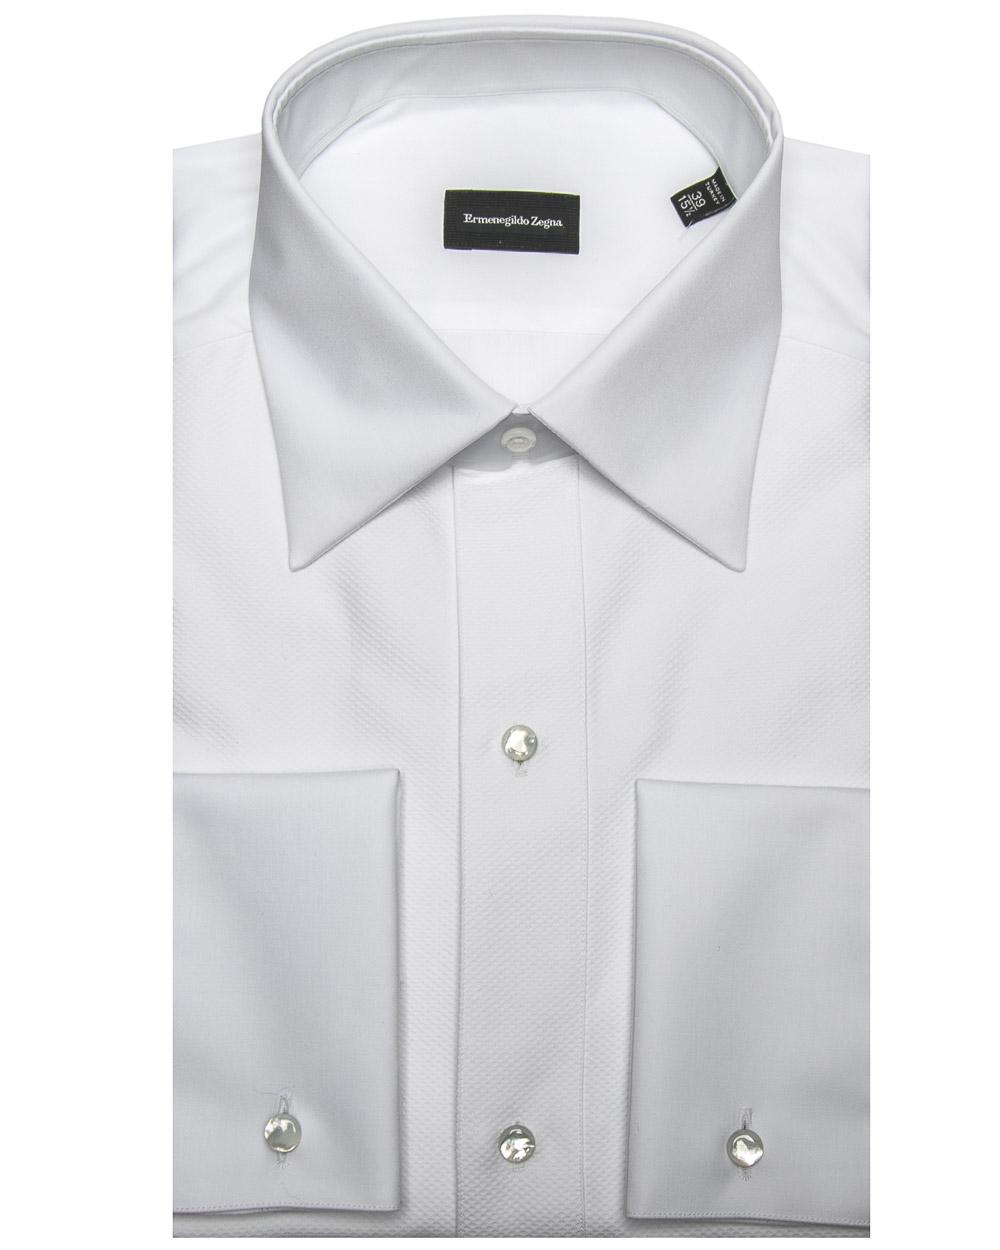 Ike Behar 100/% Woven Cotton Tuxedo Shirt